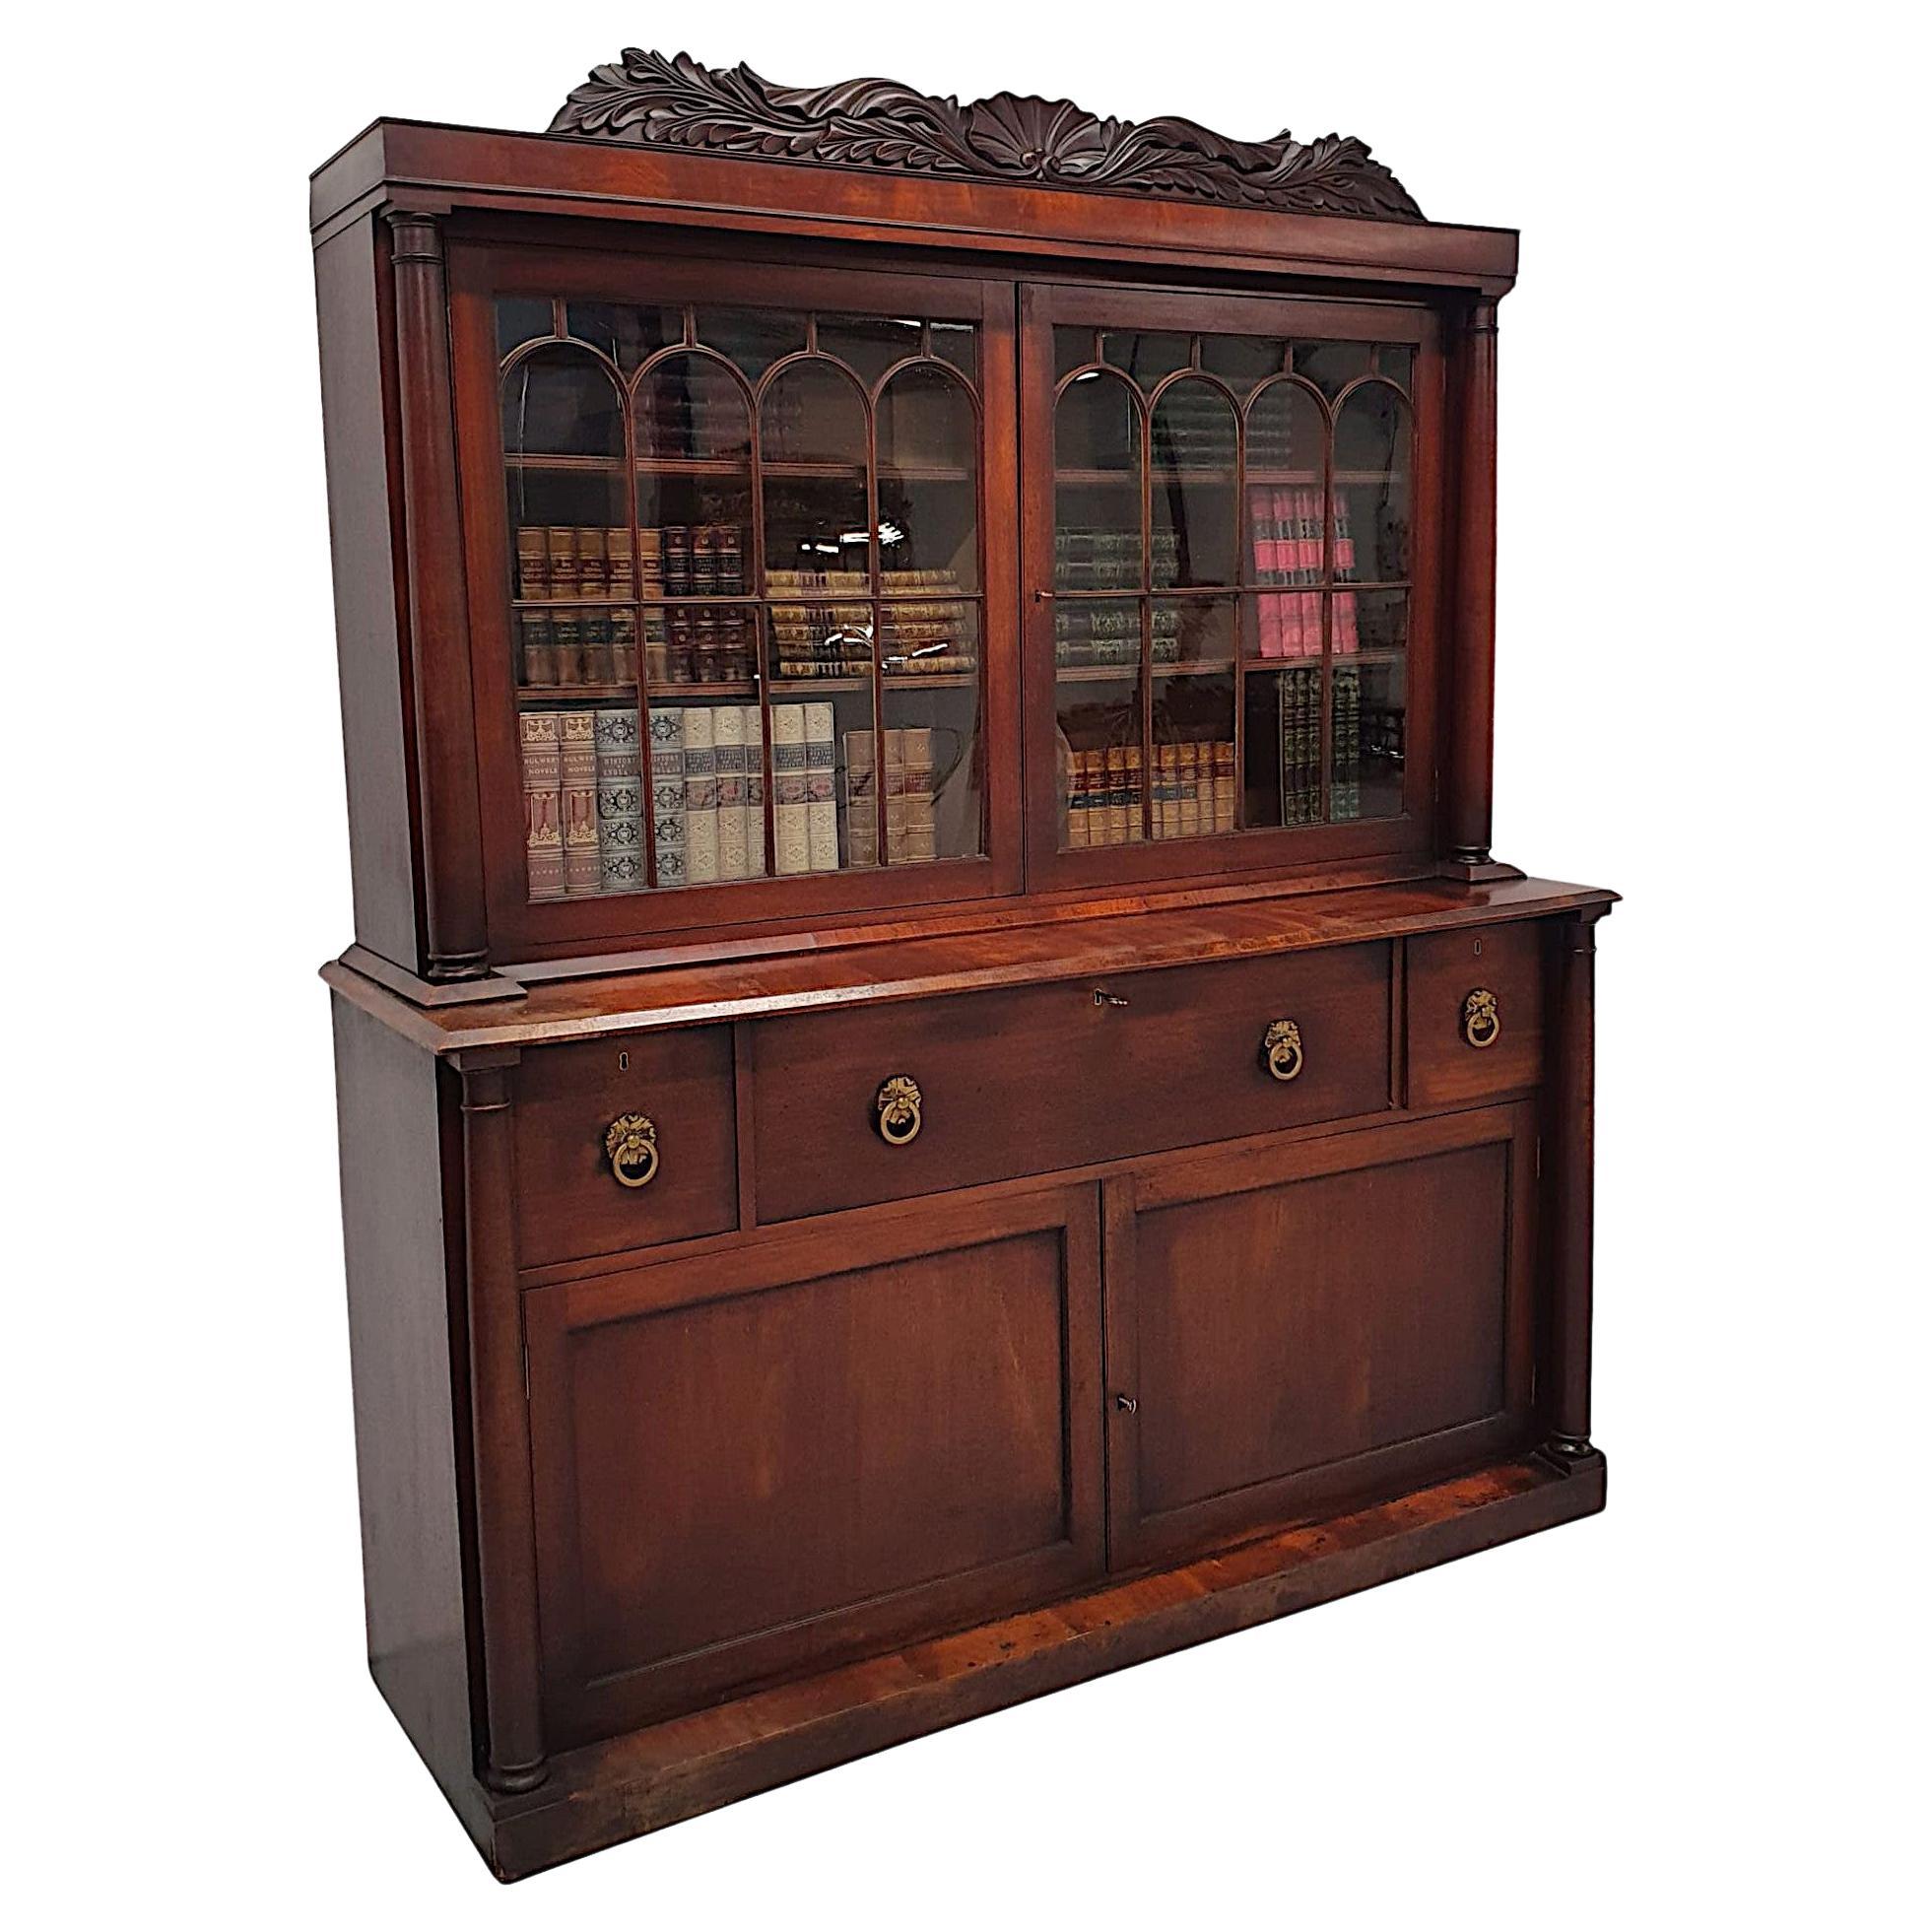 Seltenes und schönes irisches Sekretär-Bücherregal aus dem frühen 19. Jahrhundert, William IV.